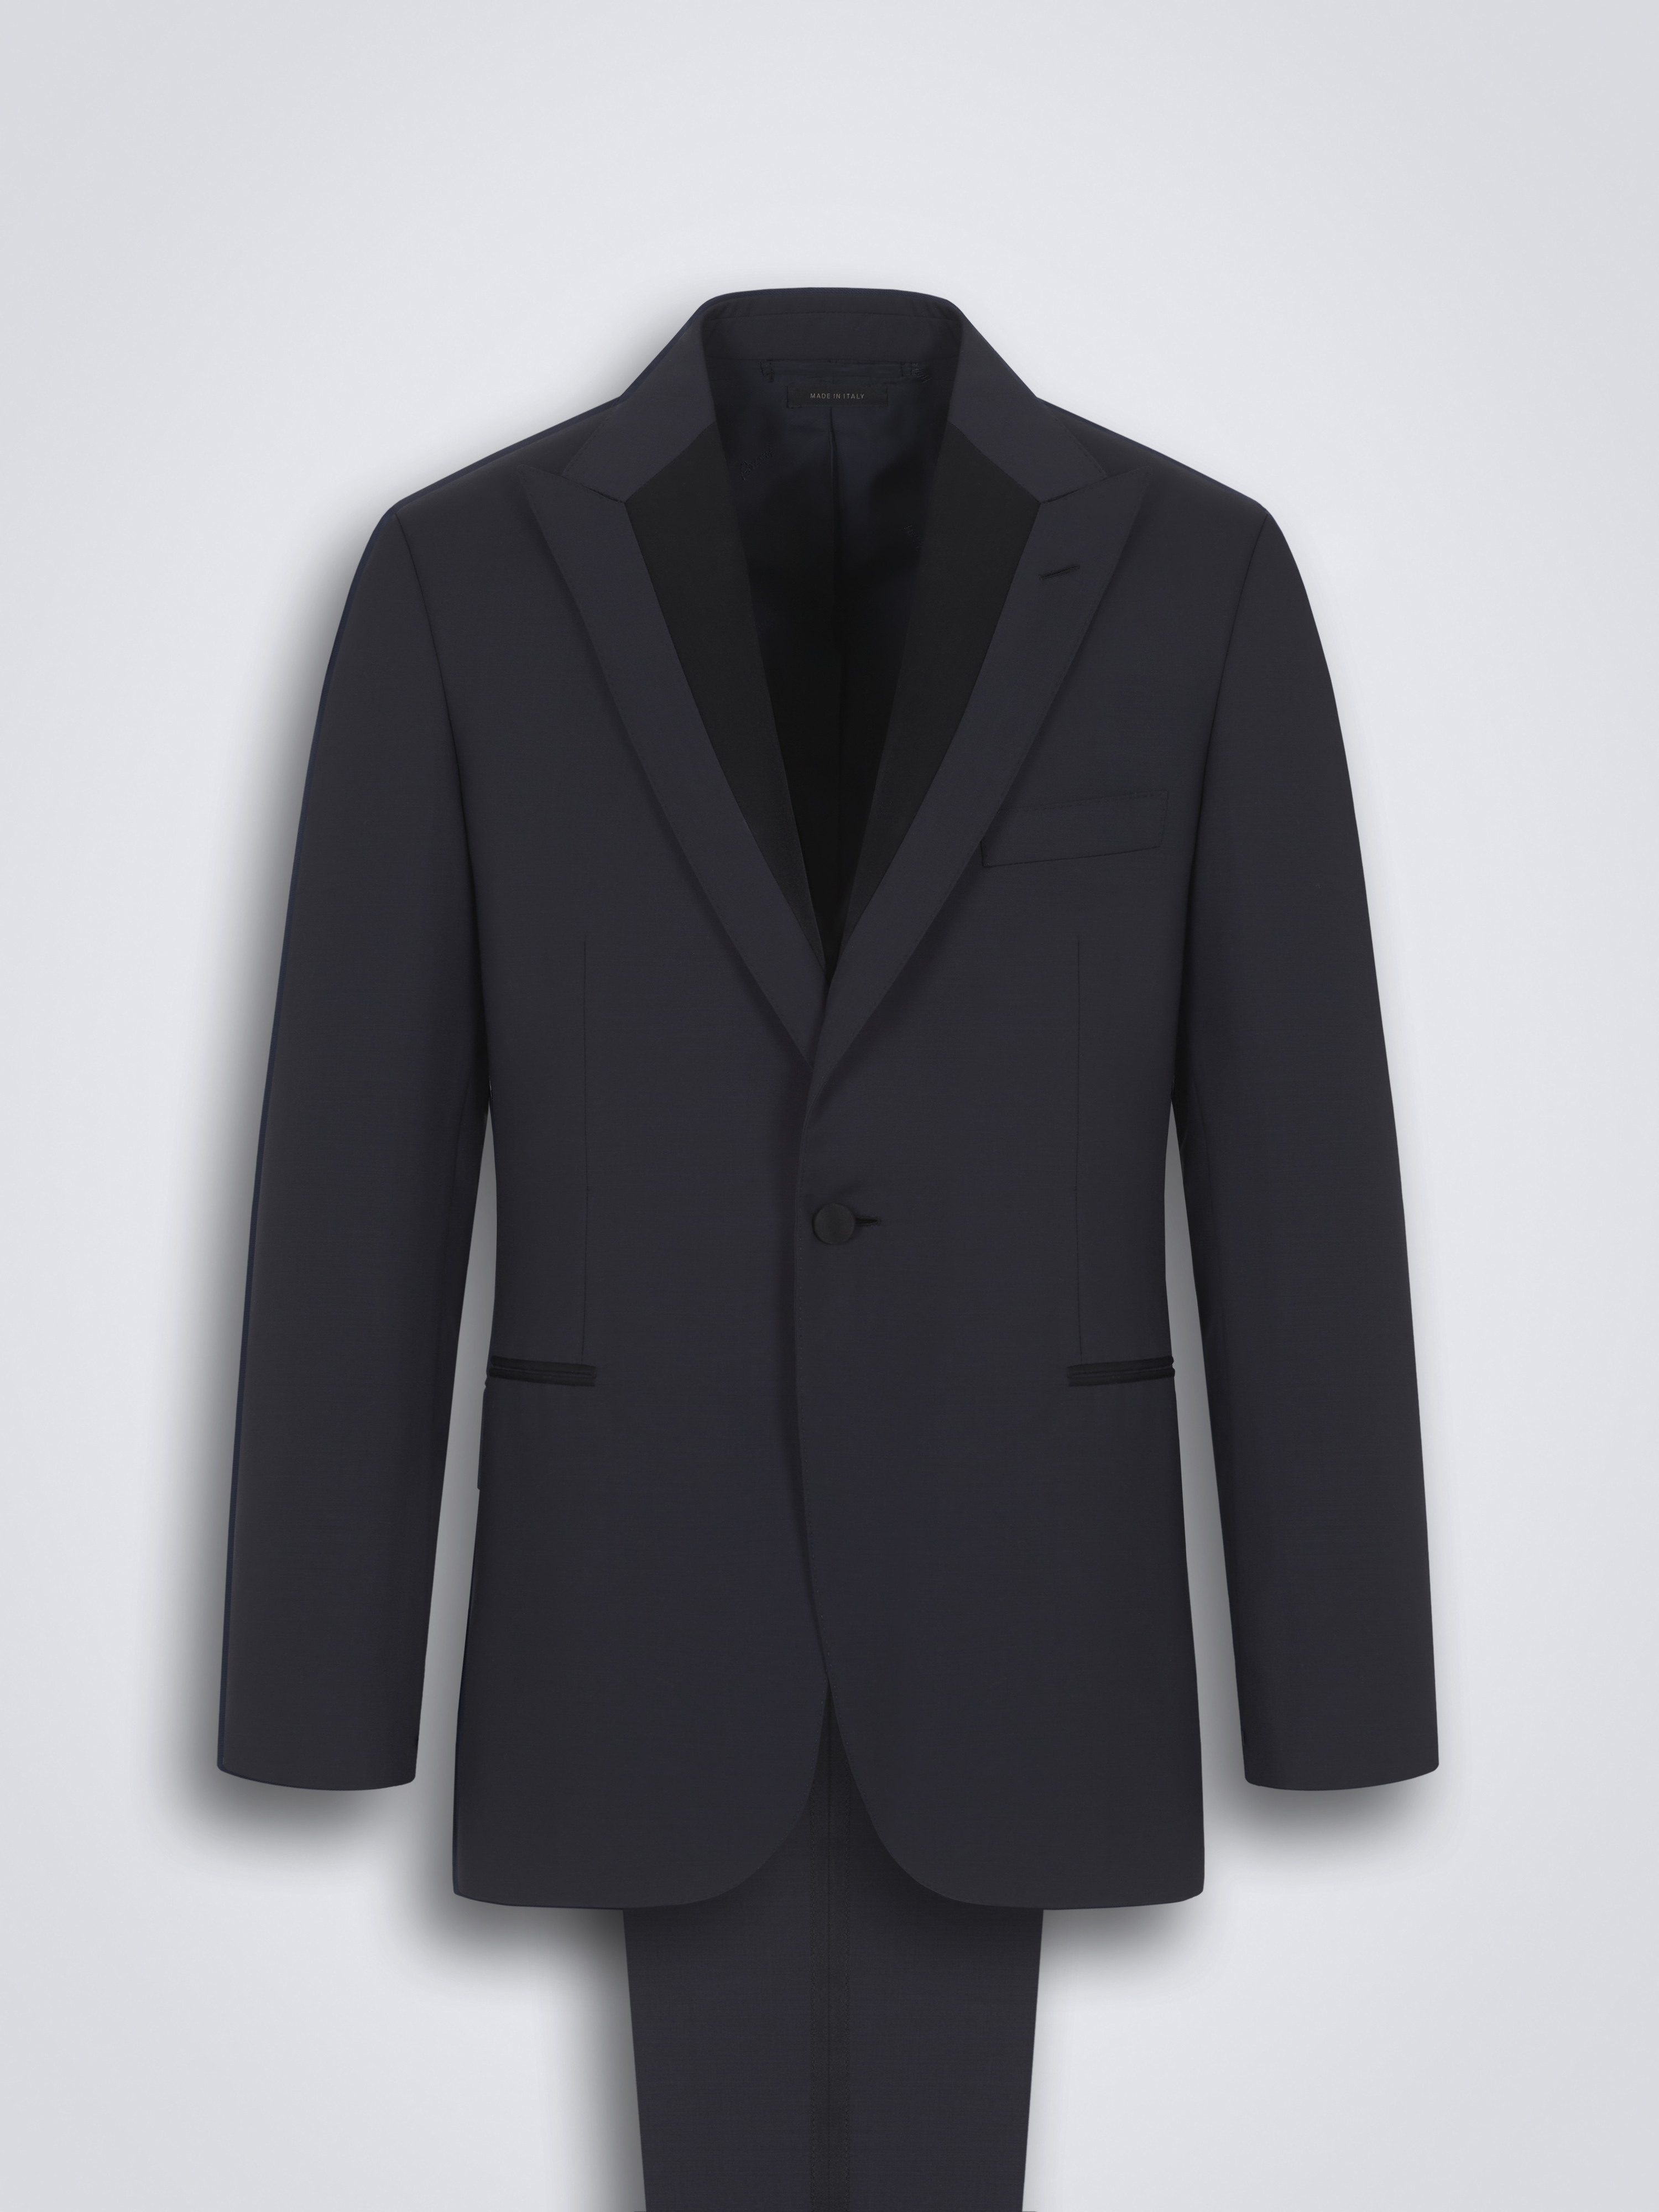 Essential black tuxedo suspenders